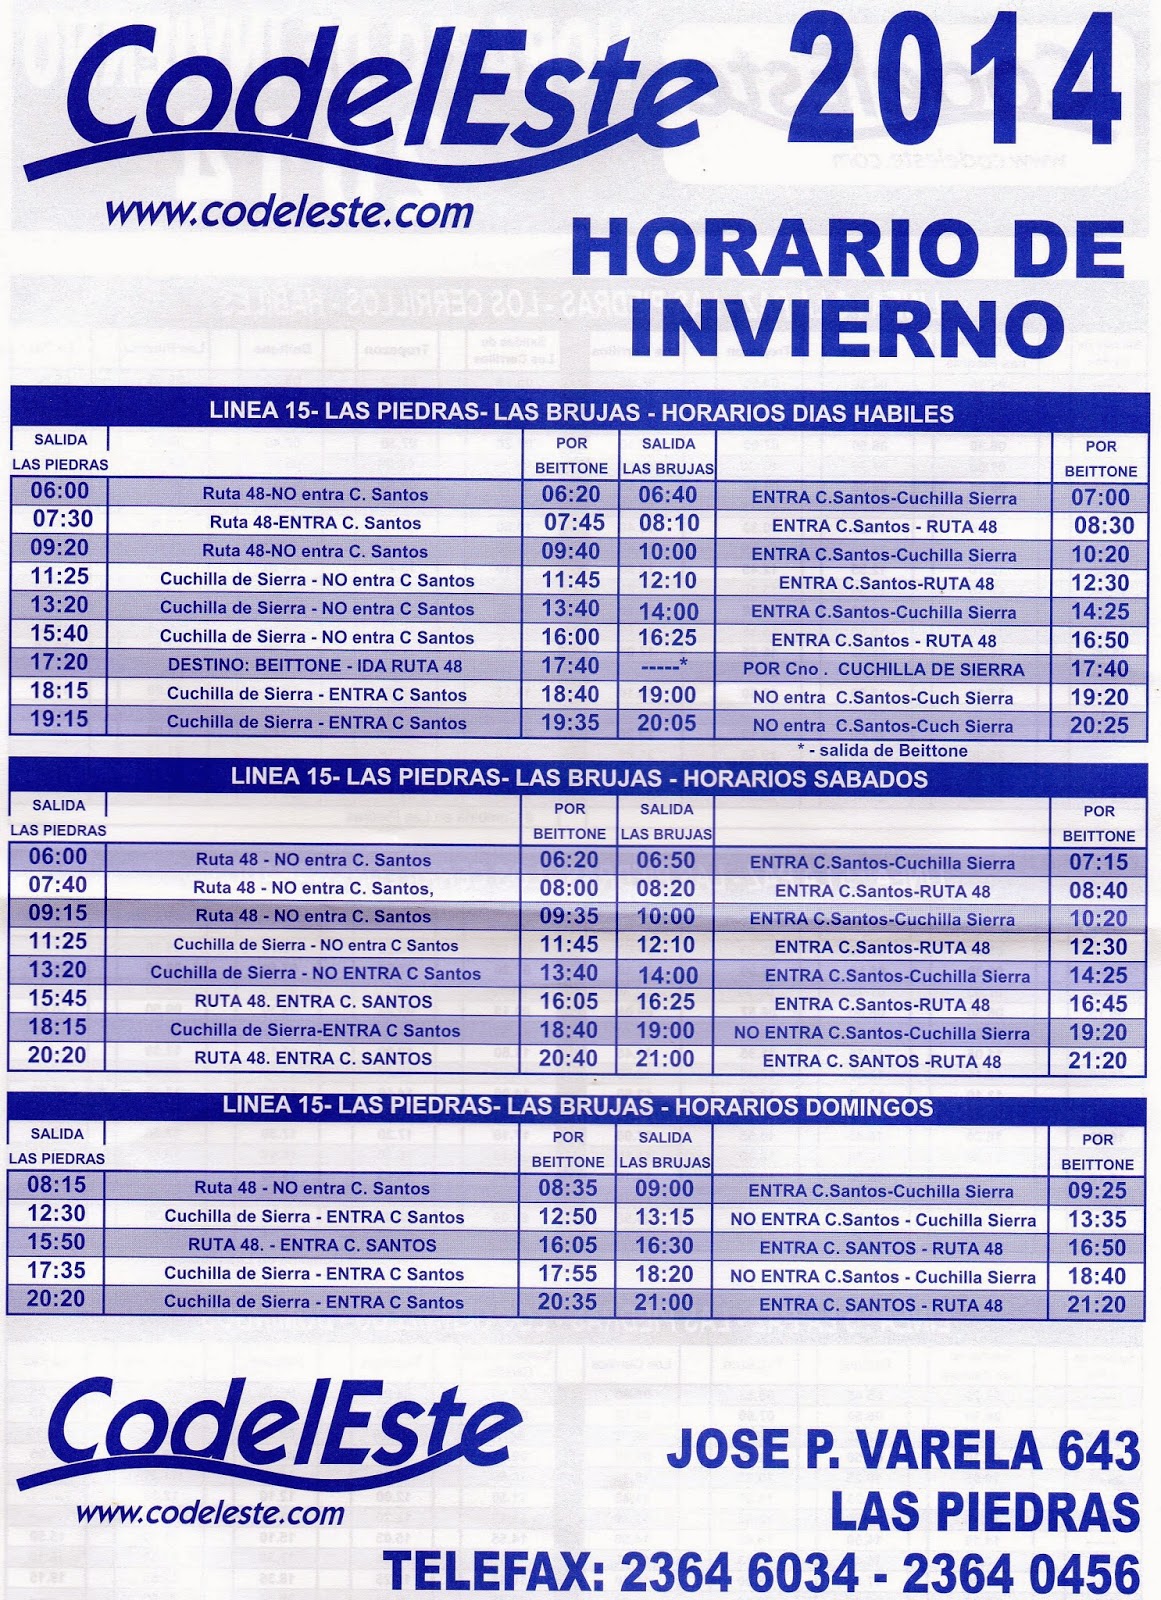 HORARIOS DEL TRANSPORTE METROPOLITANO: HORARIOS DE INVIERNO 2014